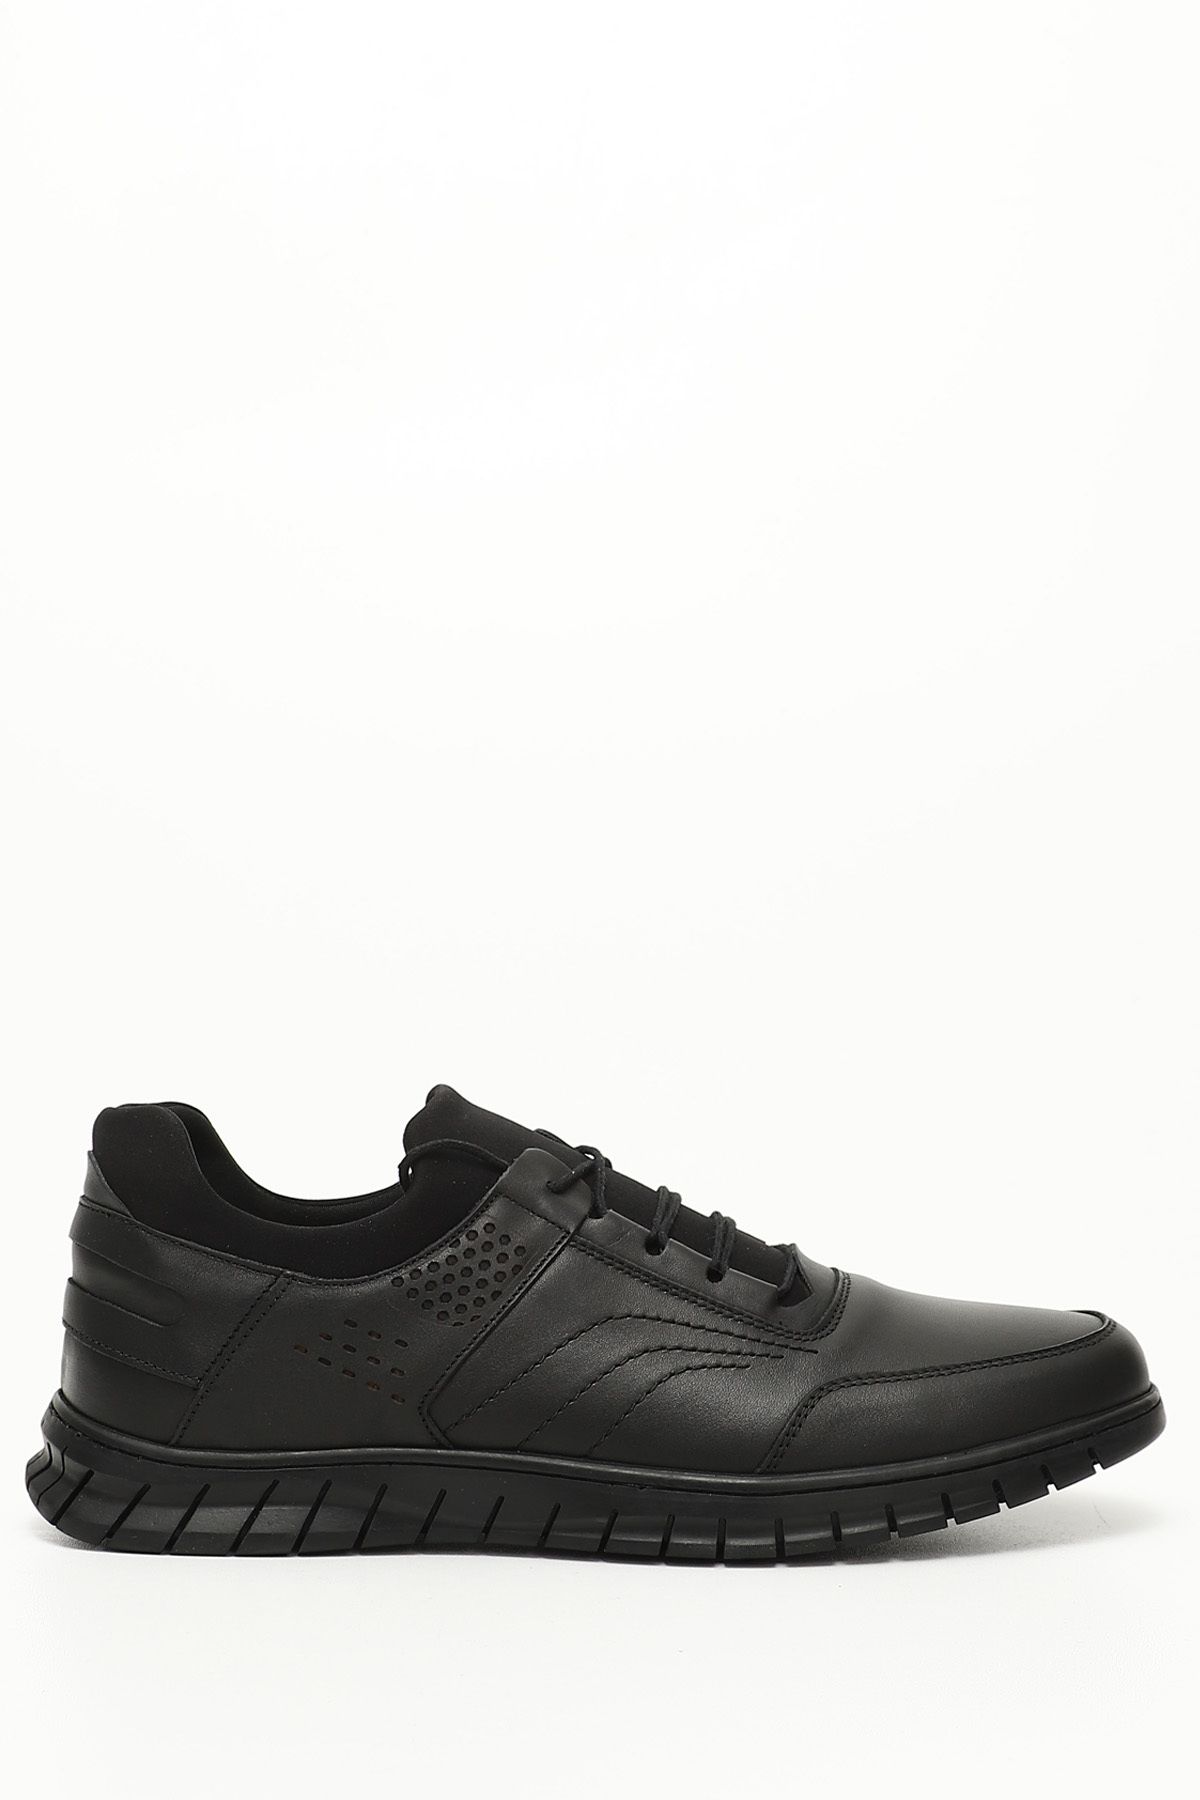 GÖNDERİ(R) Siyah Gön Hakiki Deri Yuvarlak Burun Bağcıklı Günlük Erkek Sneaker 42284